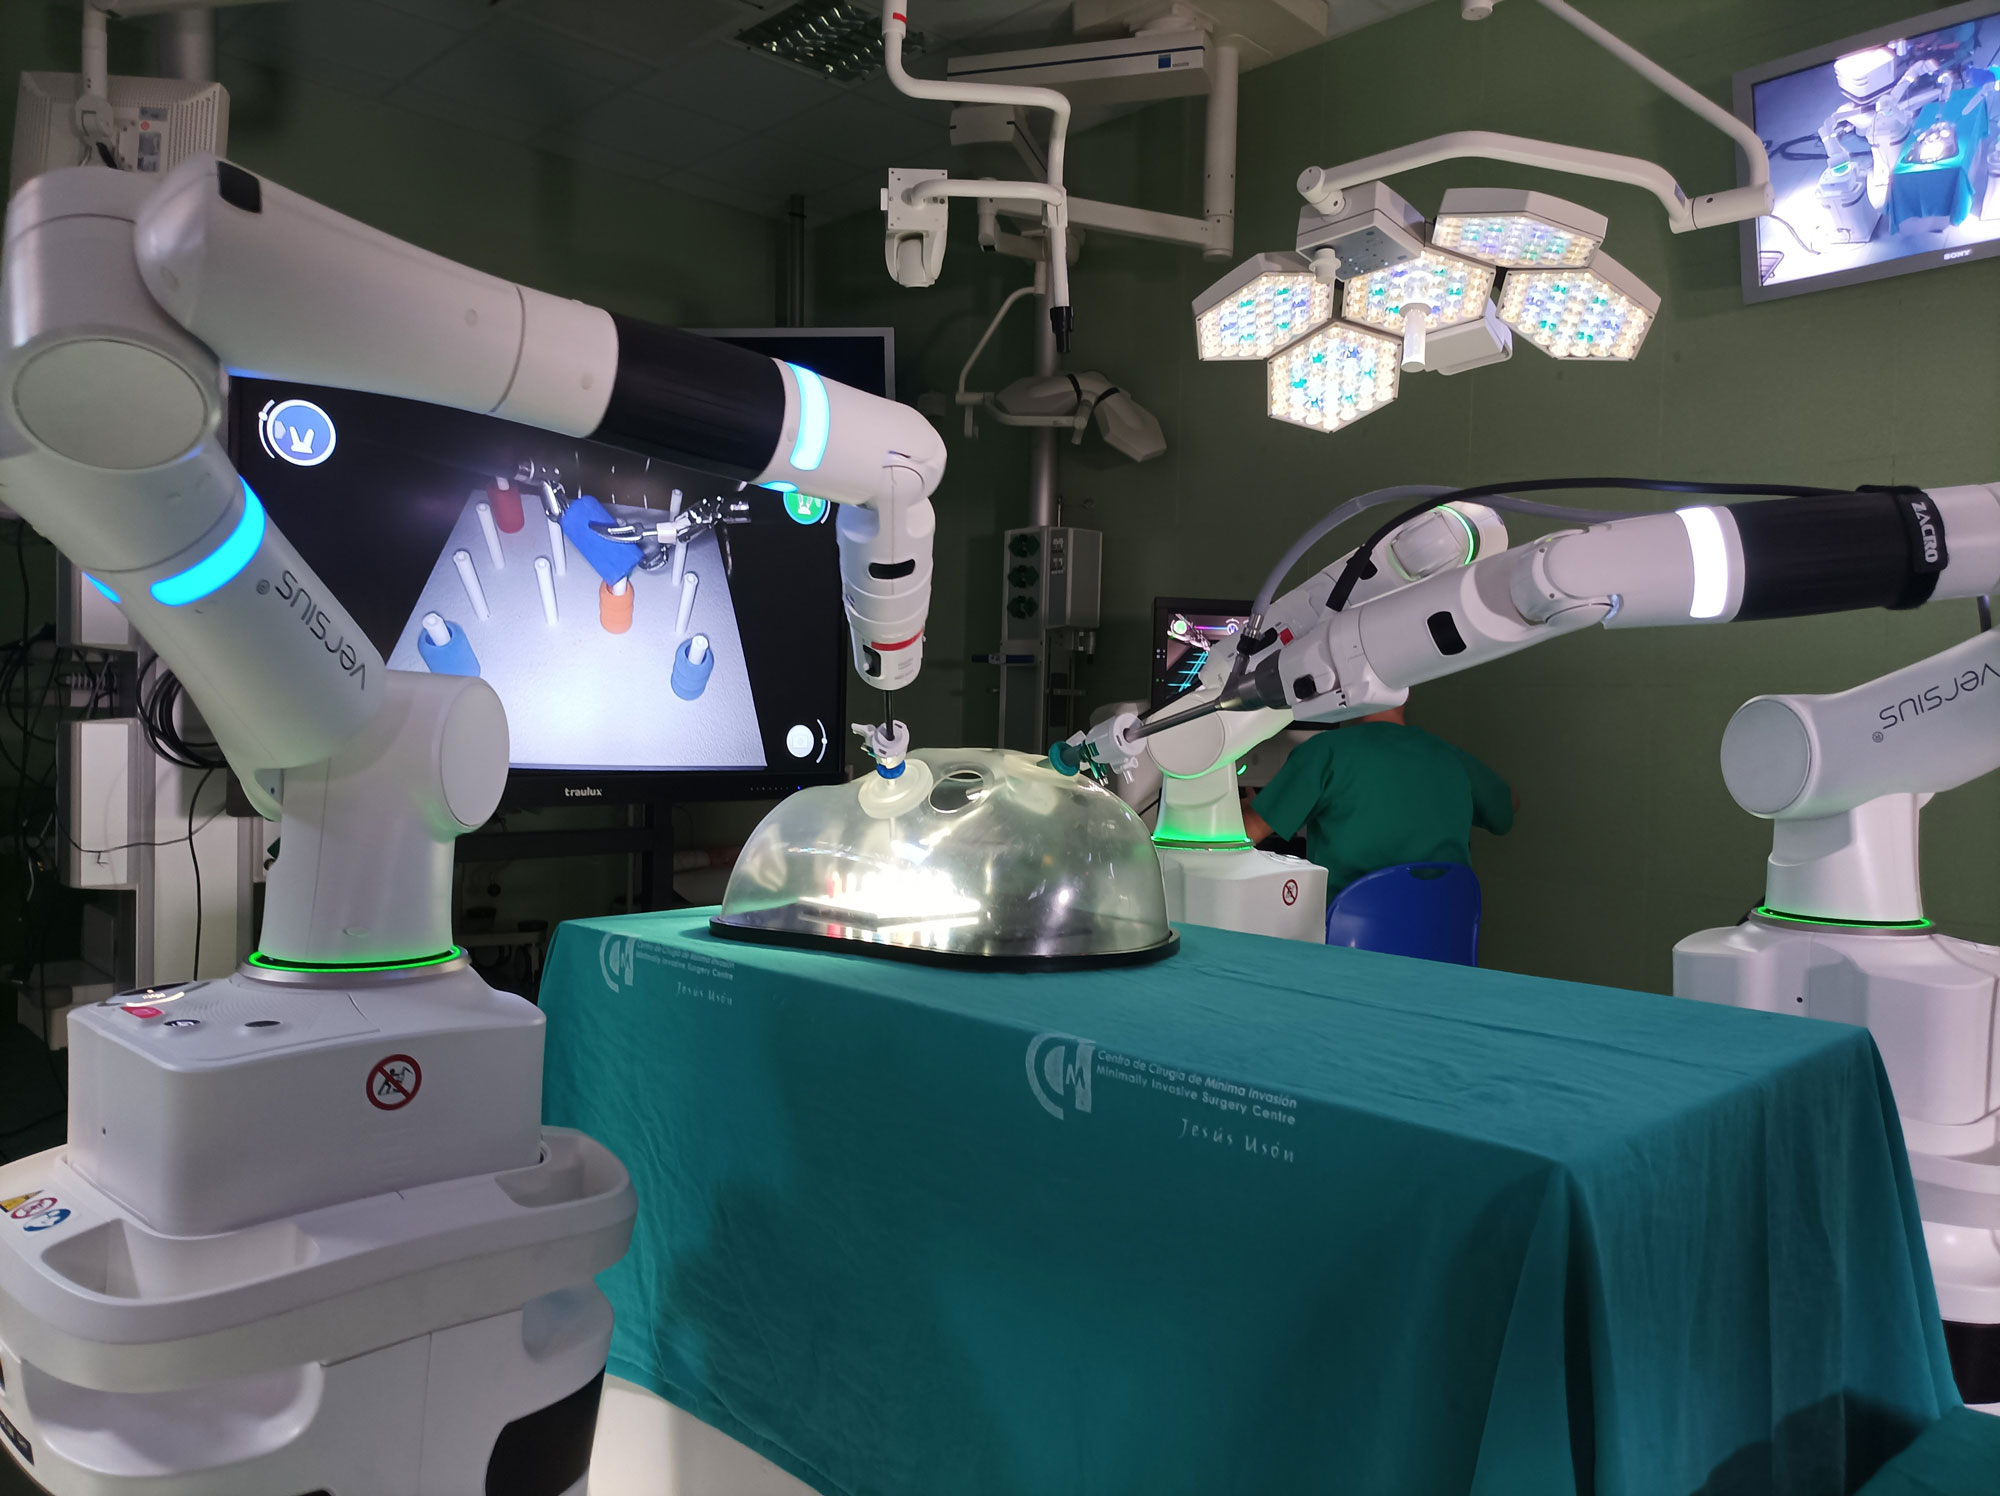 El CCMIJU presentó en unas jornadas de puertas abiertas una solución innovadora para cirugía robótica laparoscópica